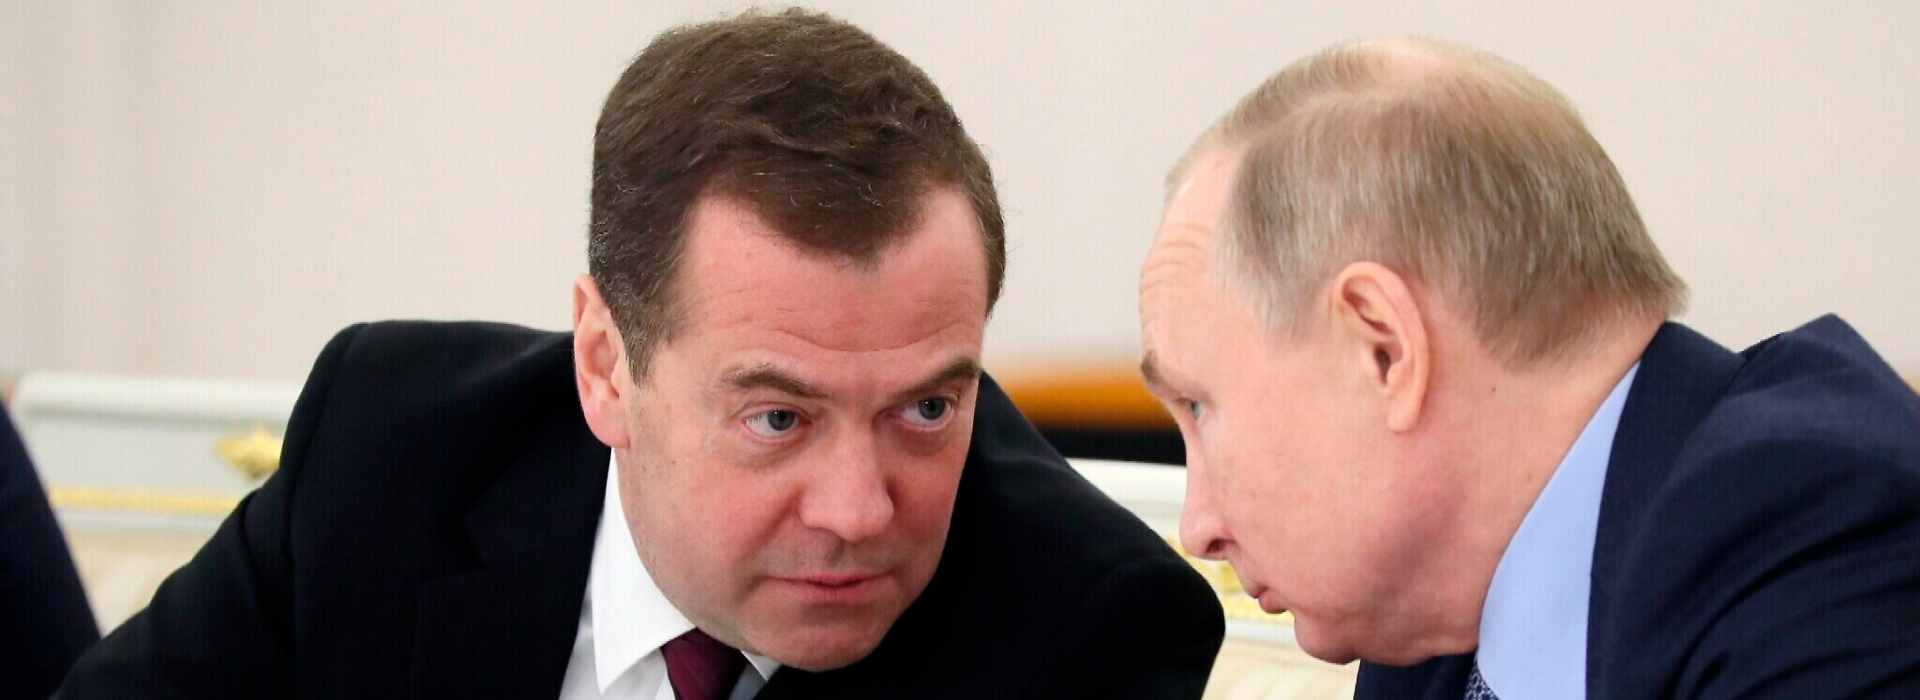 Dmitry Medvedev, guerra nucleare, Nato e Russia